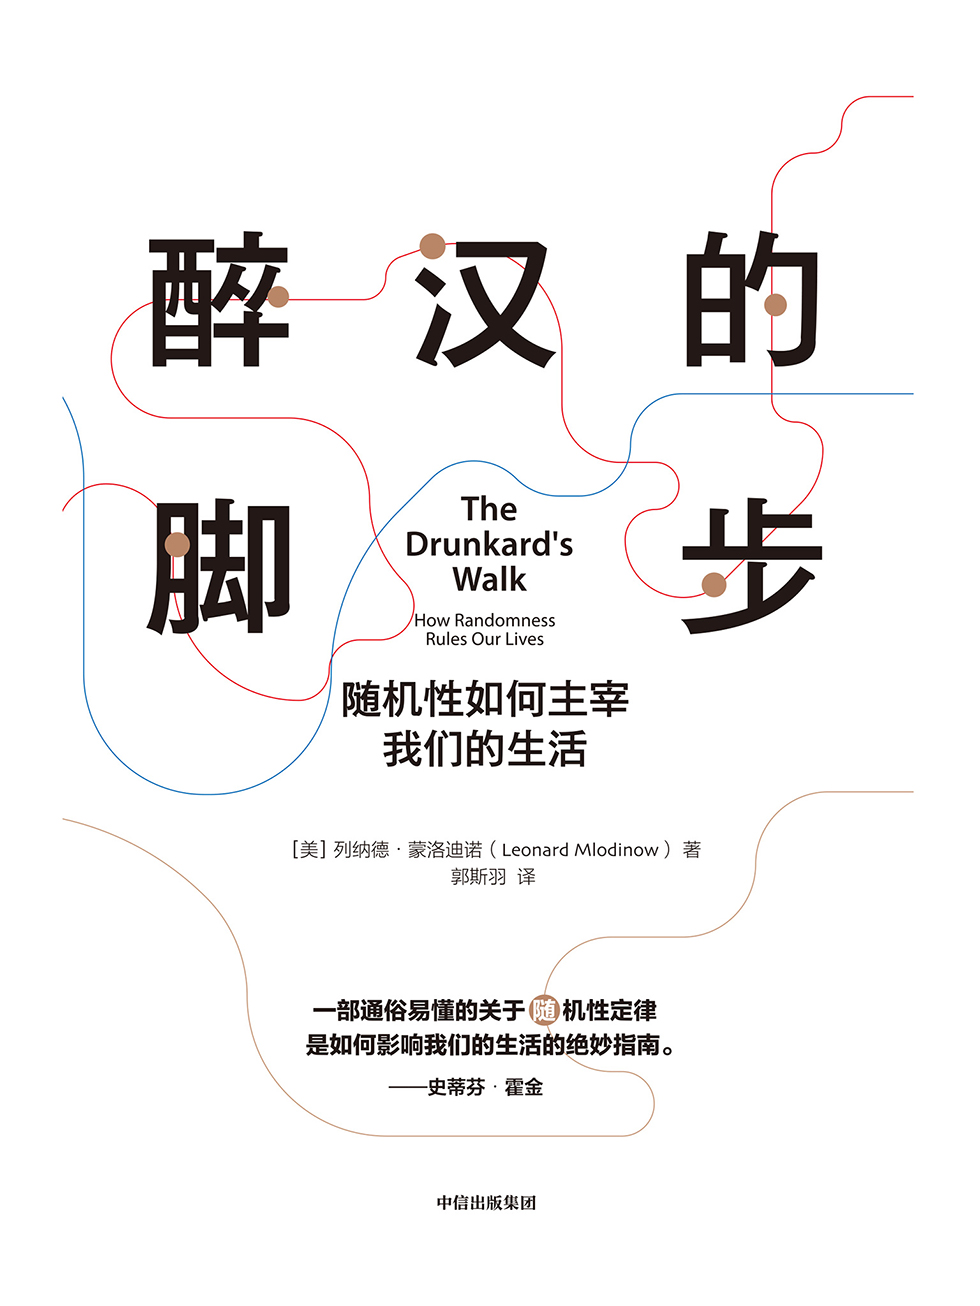 醉汉的脚步—列纳德·蒙洛迪诺 & 郭斯羽—pdf+mobi+epub+txt+azw3电子书下载